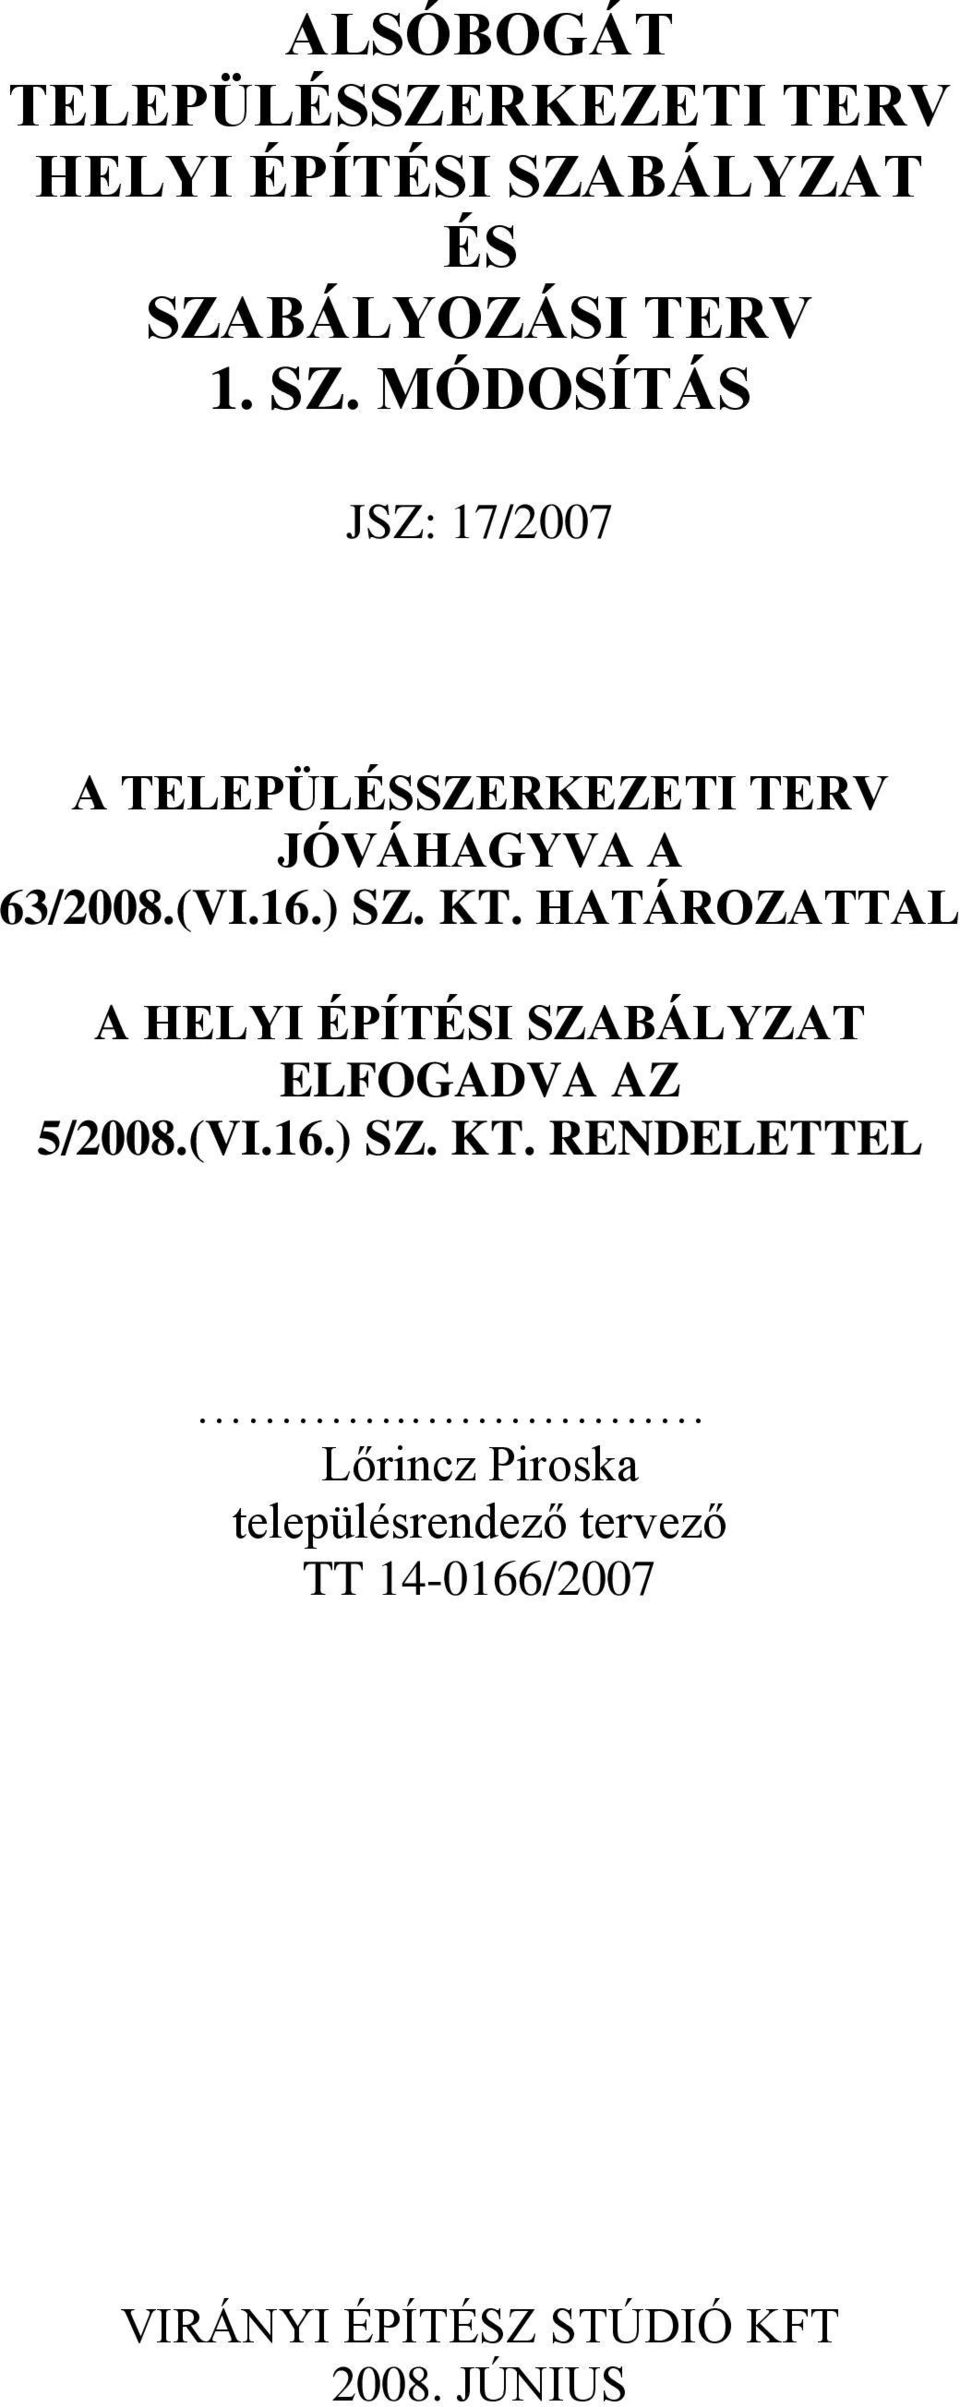 (VI.16.) SZ. KT. HATÁROZATTAL A HELYI ÉPÍTÉSI SZABÁLYZAT ELFOGADVA AZ 5/2008.(VI.16.) SZ. KT. RENDELETTEL.